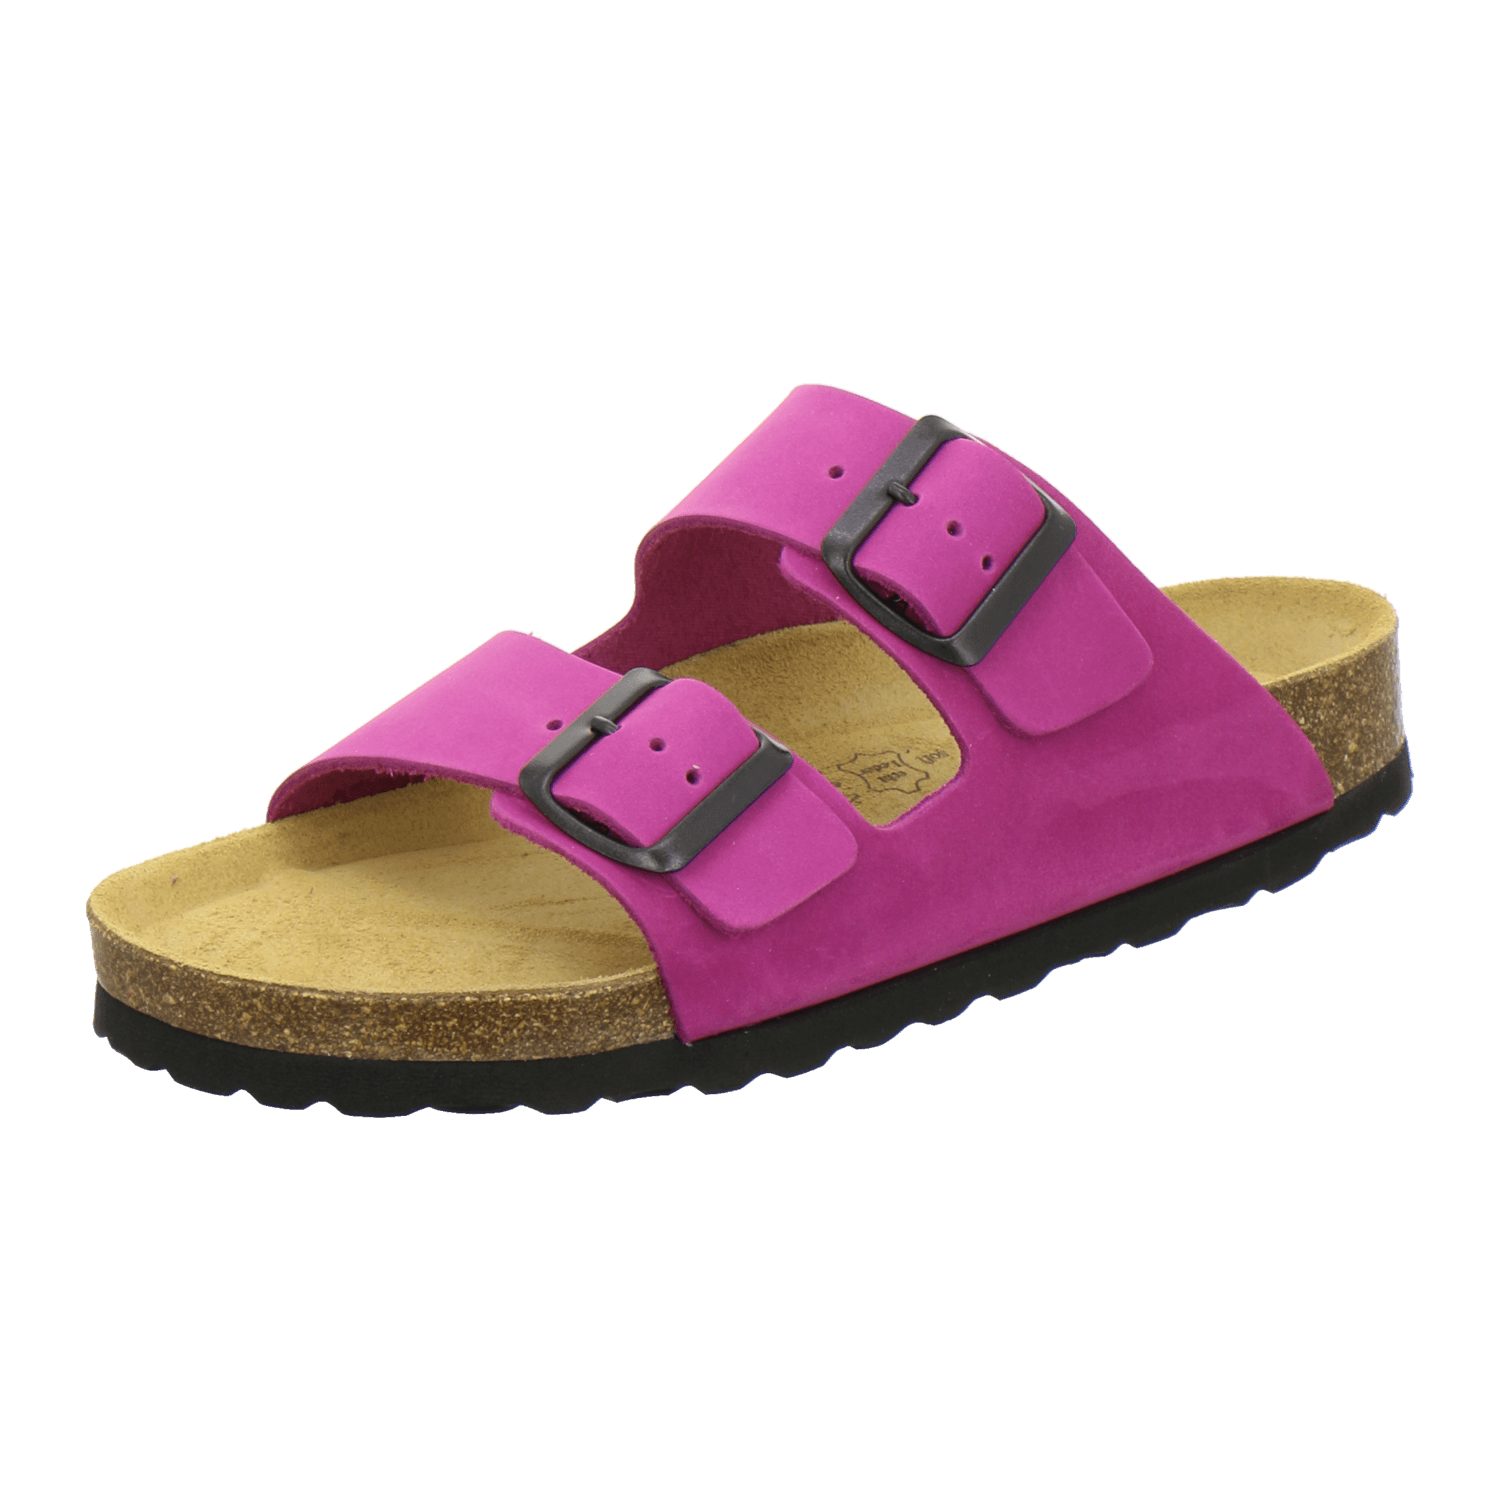 AFS-Schuhe 2100 Damen für Nubuk Leder Made aus mit Pantolette Germany in pink Fussbett